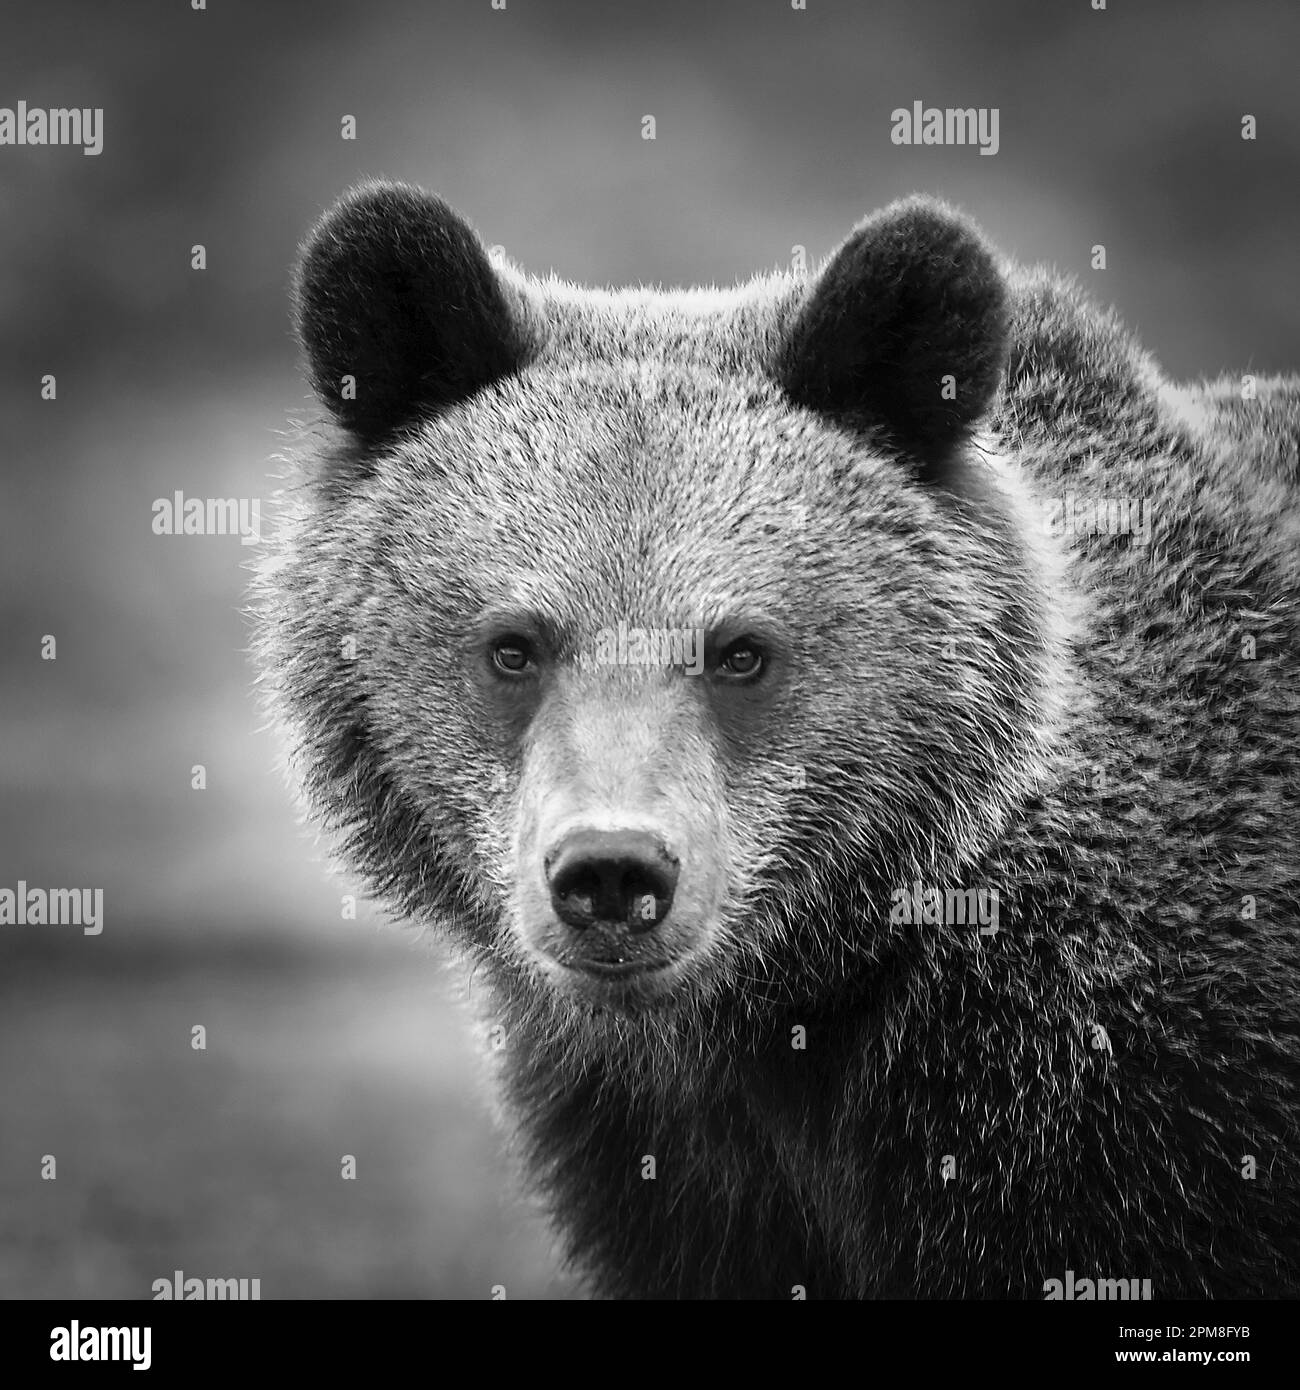 Finlandia, Ruhtinansalmi, vicino a Suomussalmi, orso bruno. Ursus arctos. Immagine in bianco e nero. Immagine in bianco e nero. Foto Stock